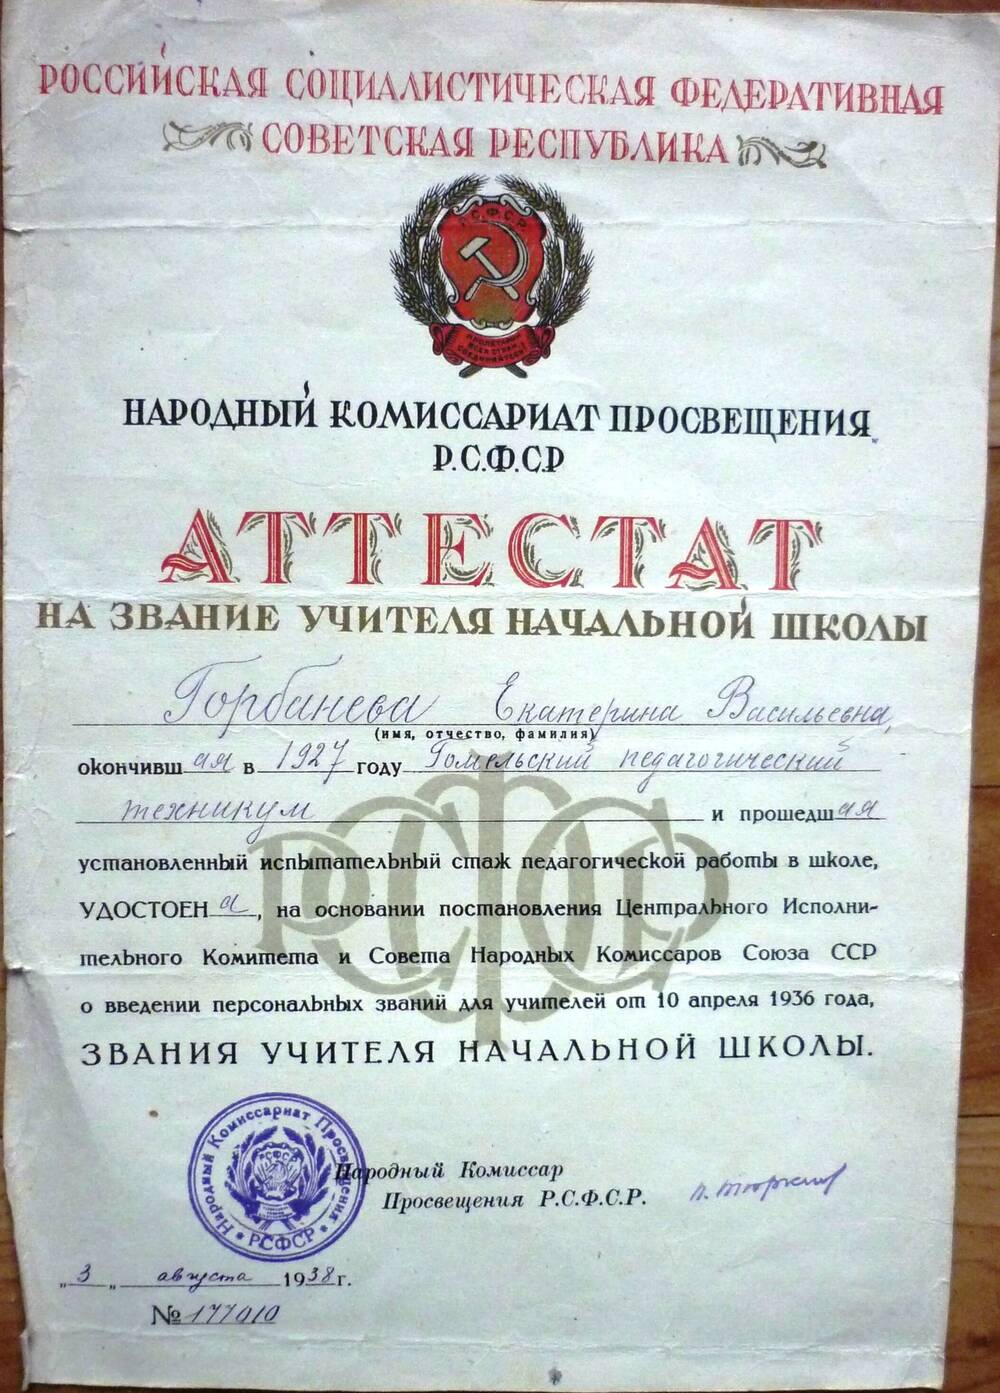 Аттестат на  звание учителя начальной школы Горбаневой Екатерины  Васильевны от 3 августа 1938г. №117